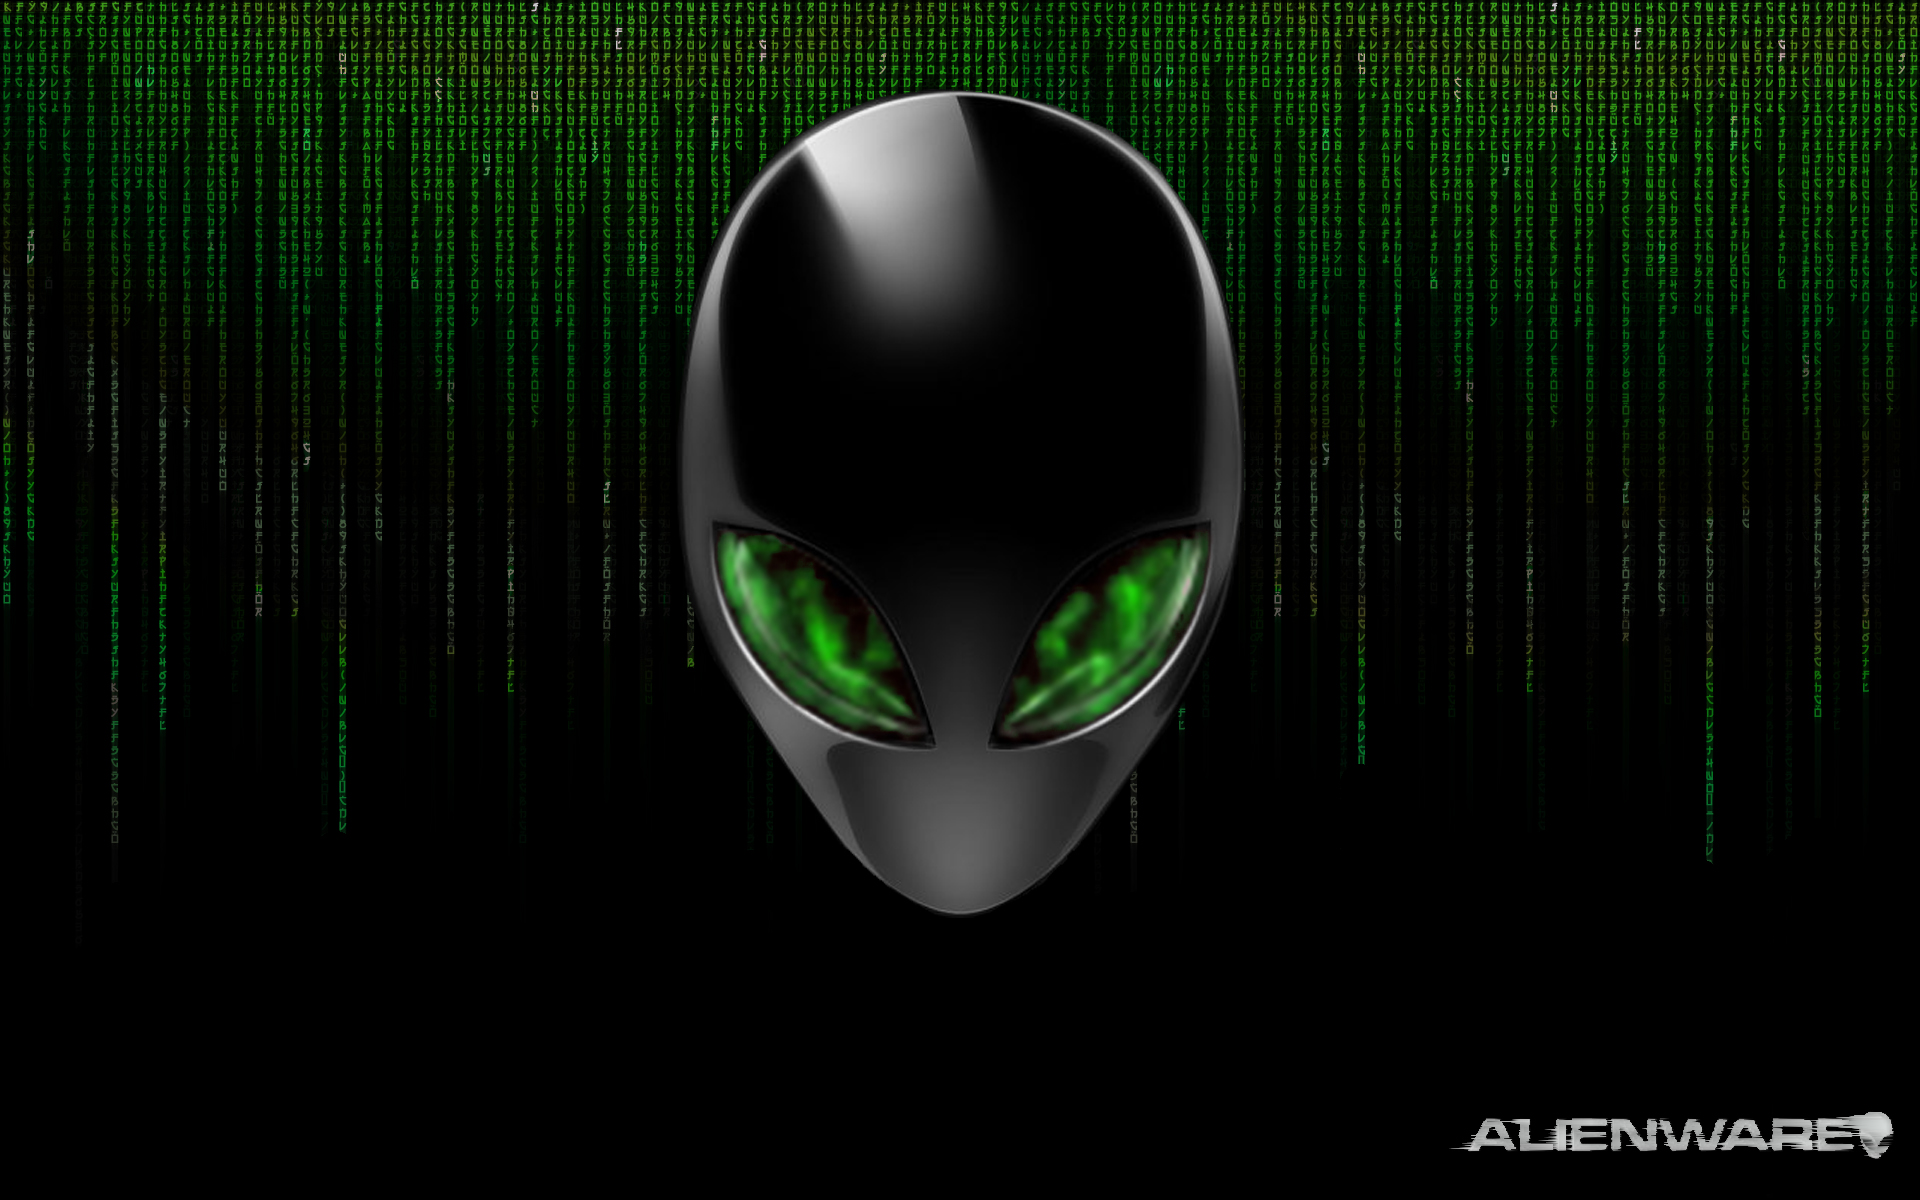 Alienware Wallpaper Green